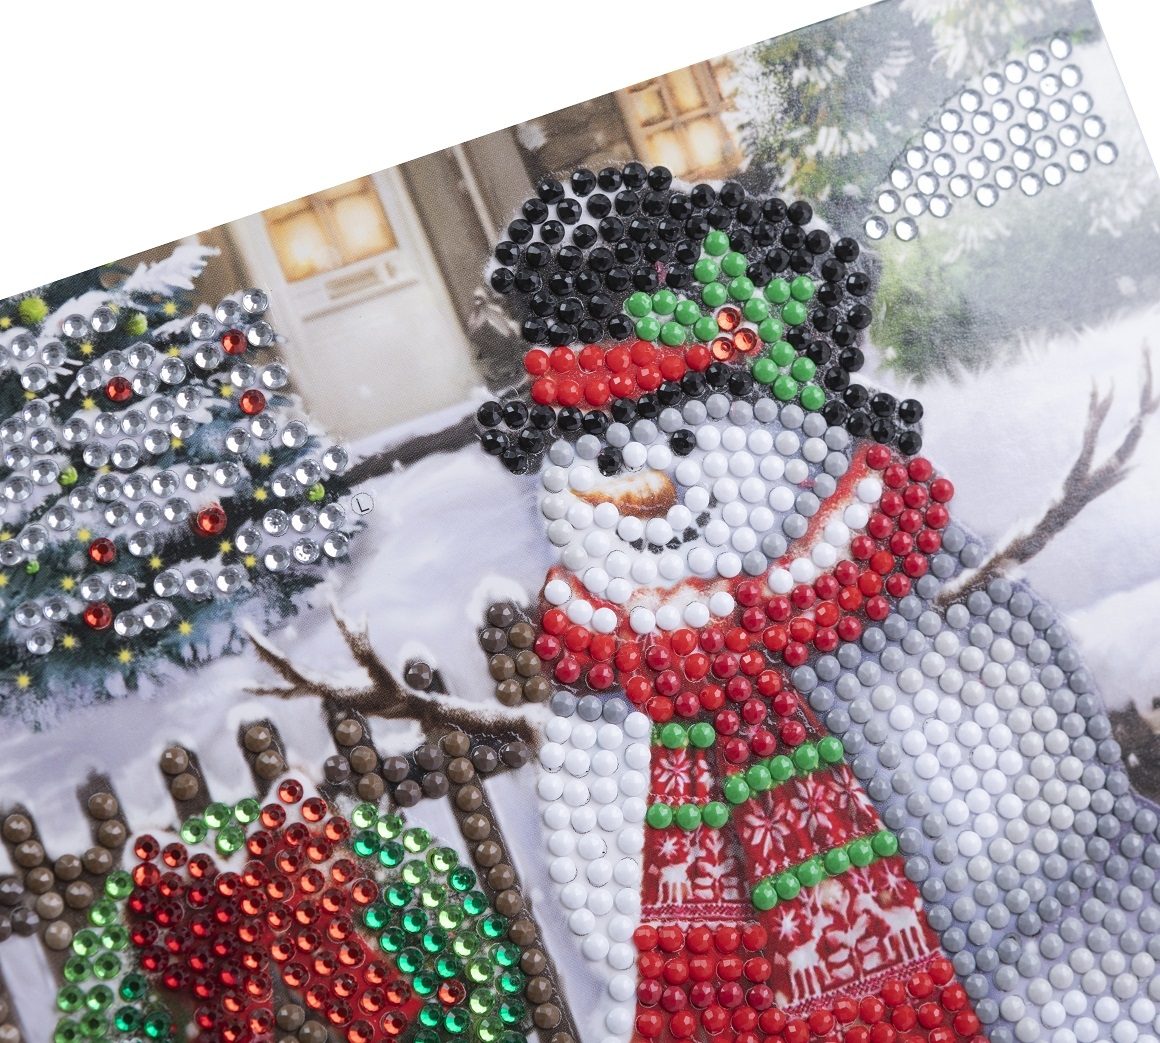 CCK-XM140 Smiling Snowman Crystal Art Card Craft Kit close up